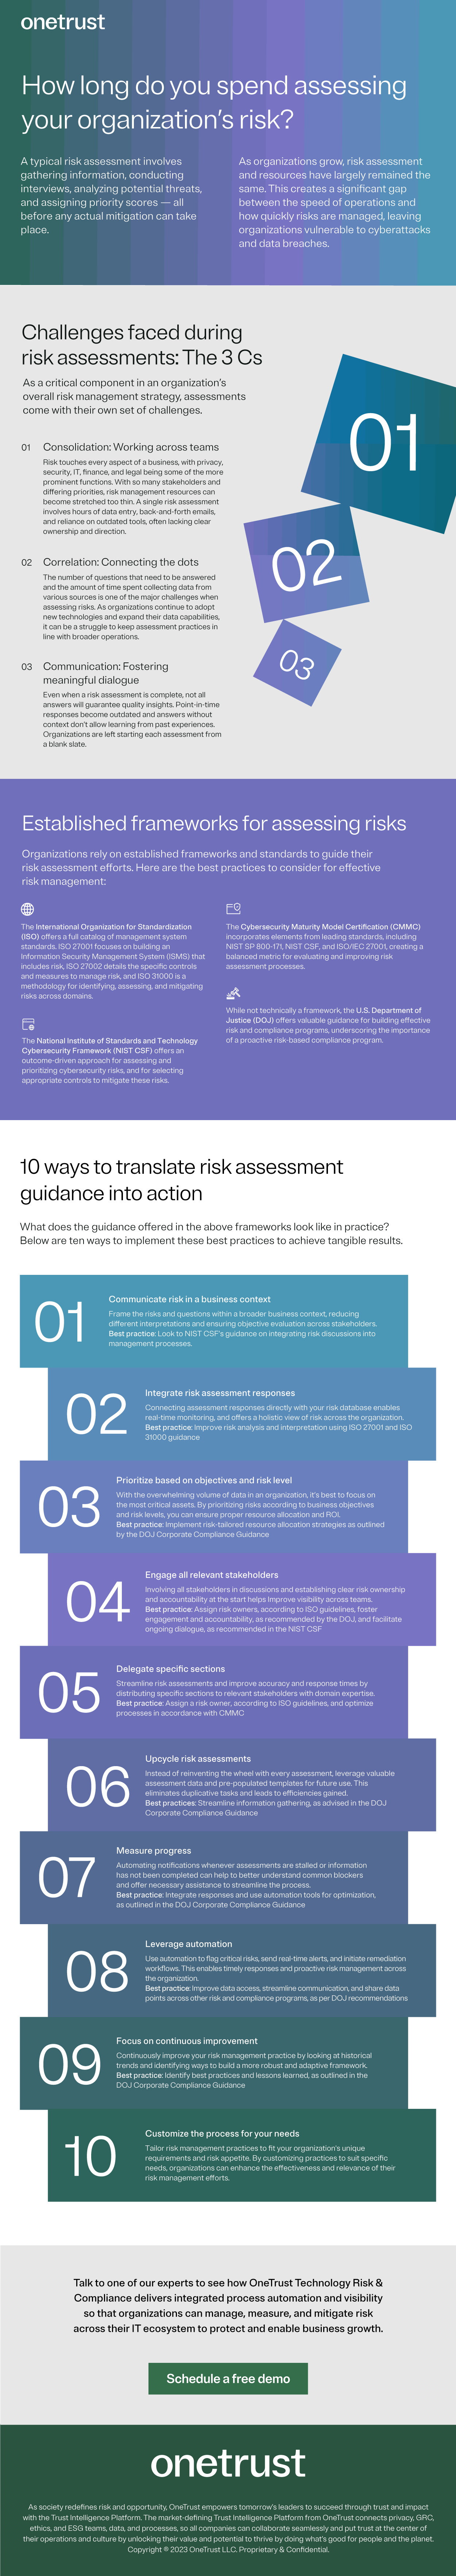 OT-cert-auto-rethinking-risk-assessments-infographic.